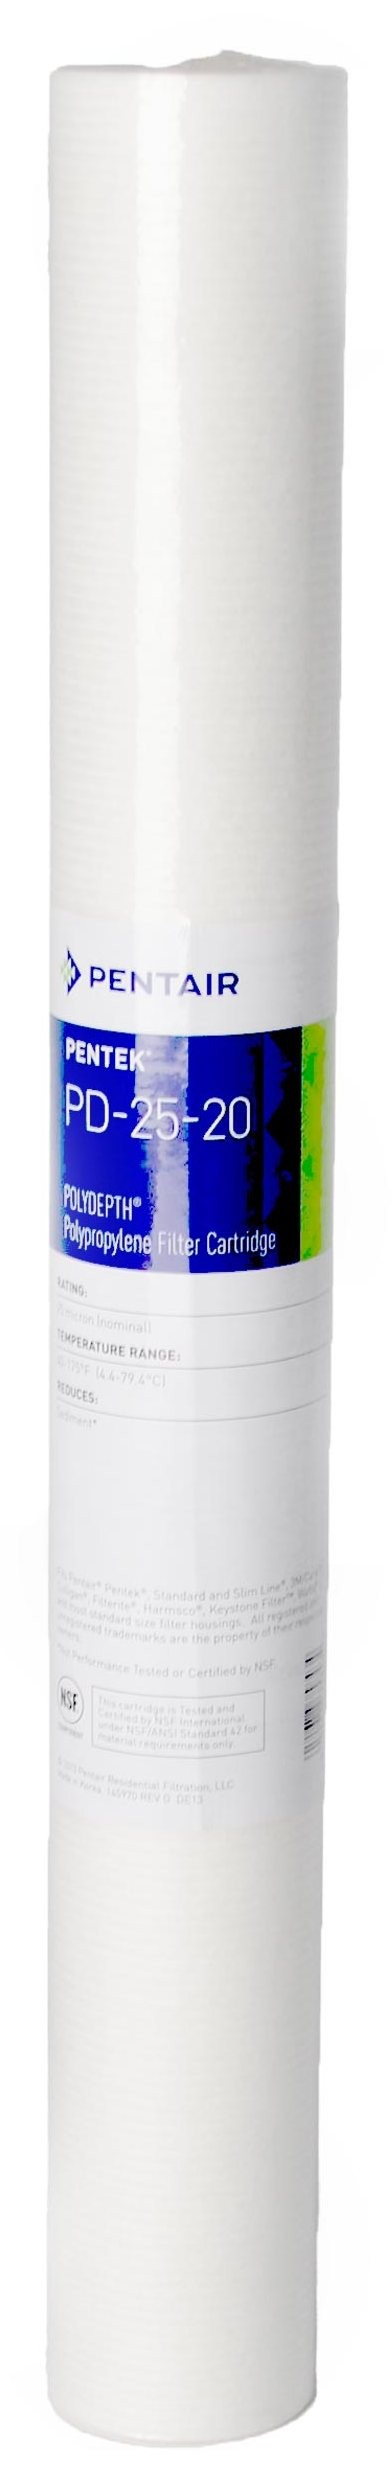 Pentair PENTEK PD-25-20 POLYDEPTH 20sl' 25мкм (155758-43)